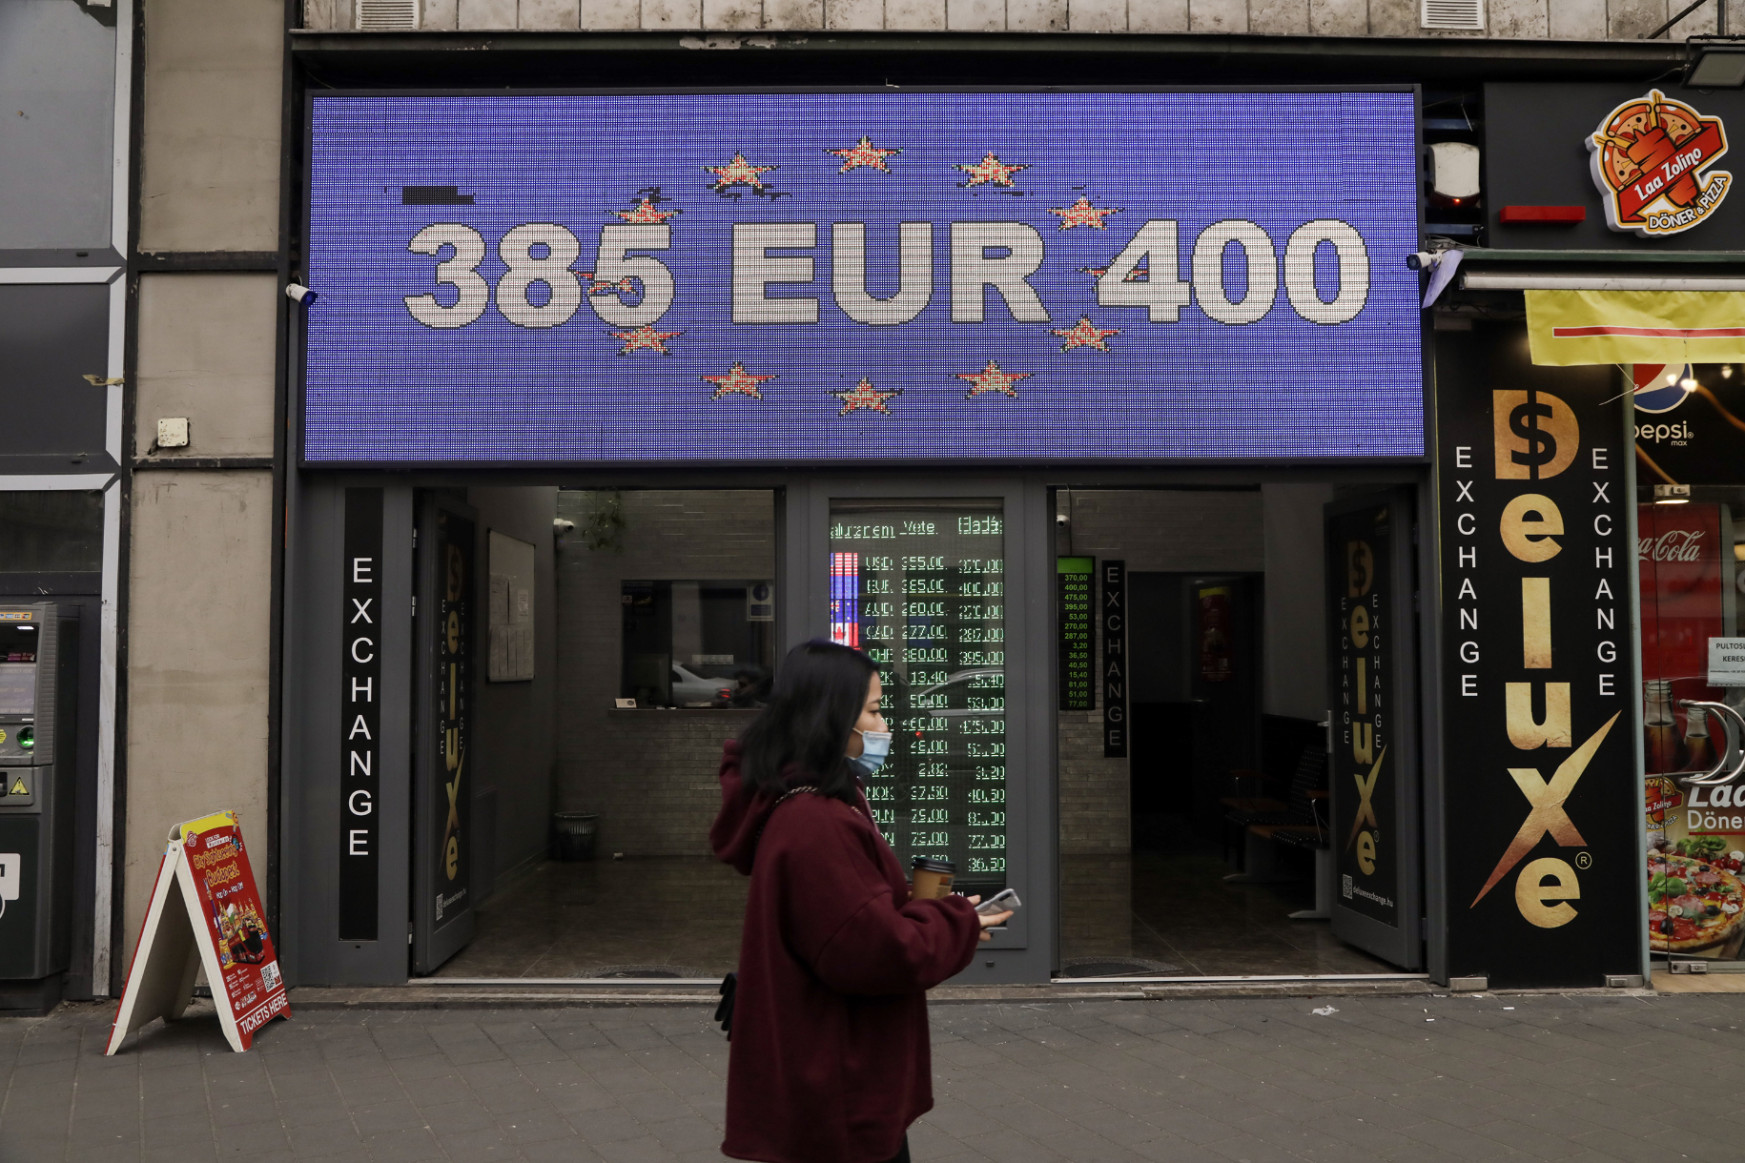 Mit jelent a 400 közeli euró a magyaroknak?